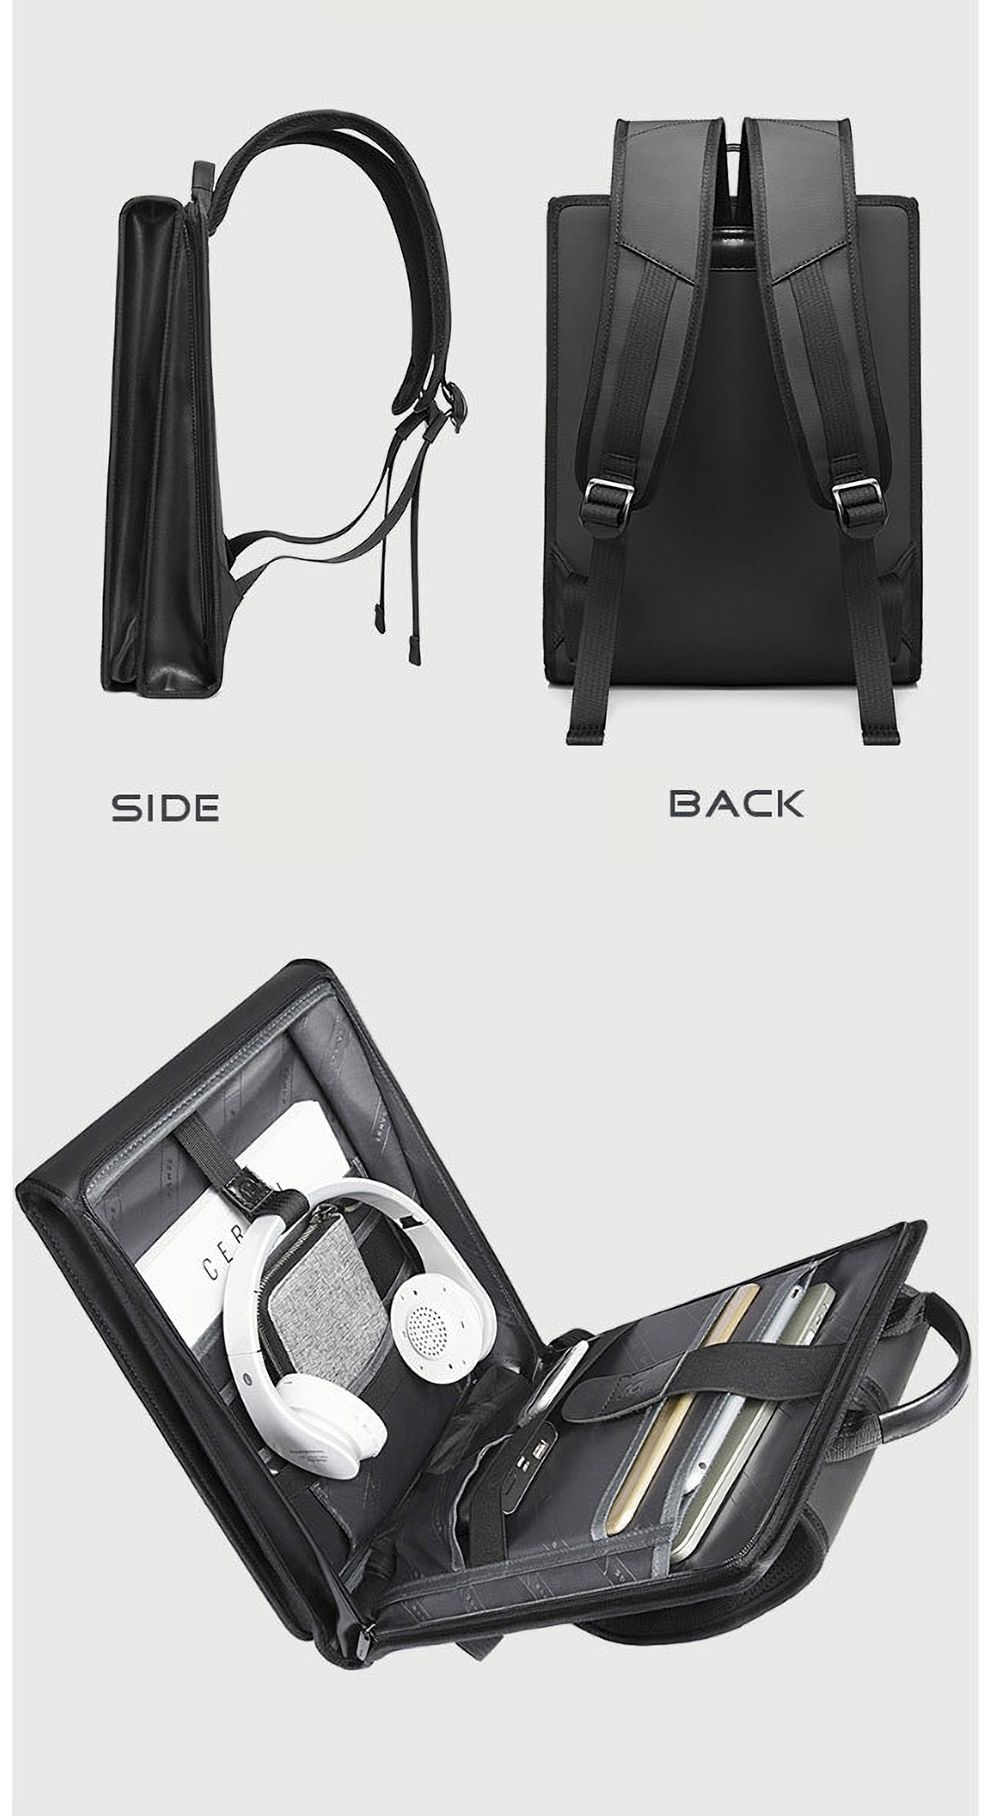 BANGE-Backpack-Laptop-Bag-Shoulder-Bag-180deg-Opening-and-Closing-Men-Business-Travel-Storage-Bag-fo-1766258